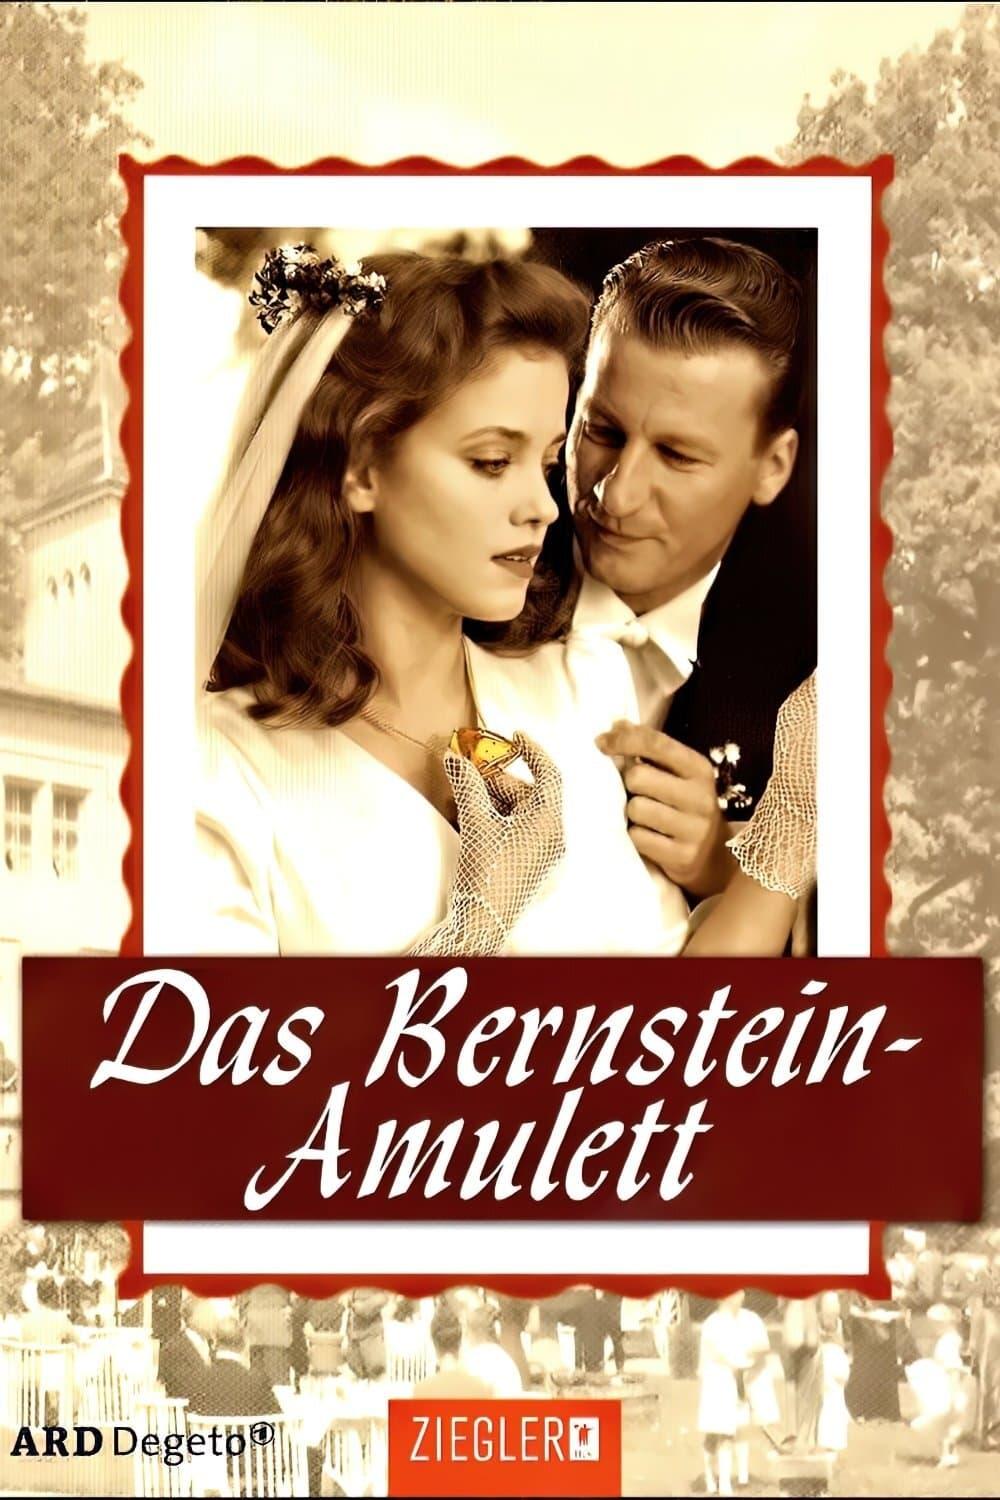 Das Bernstein-Amulett poster